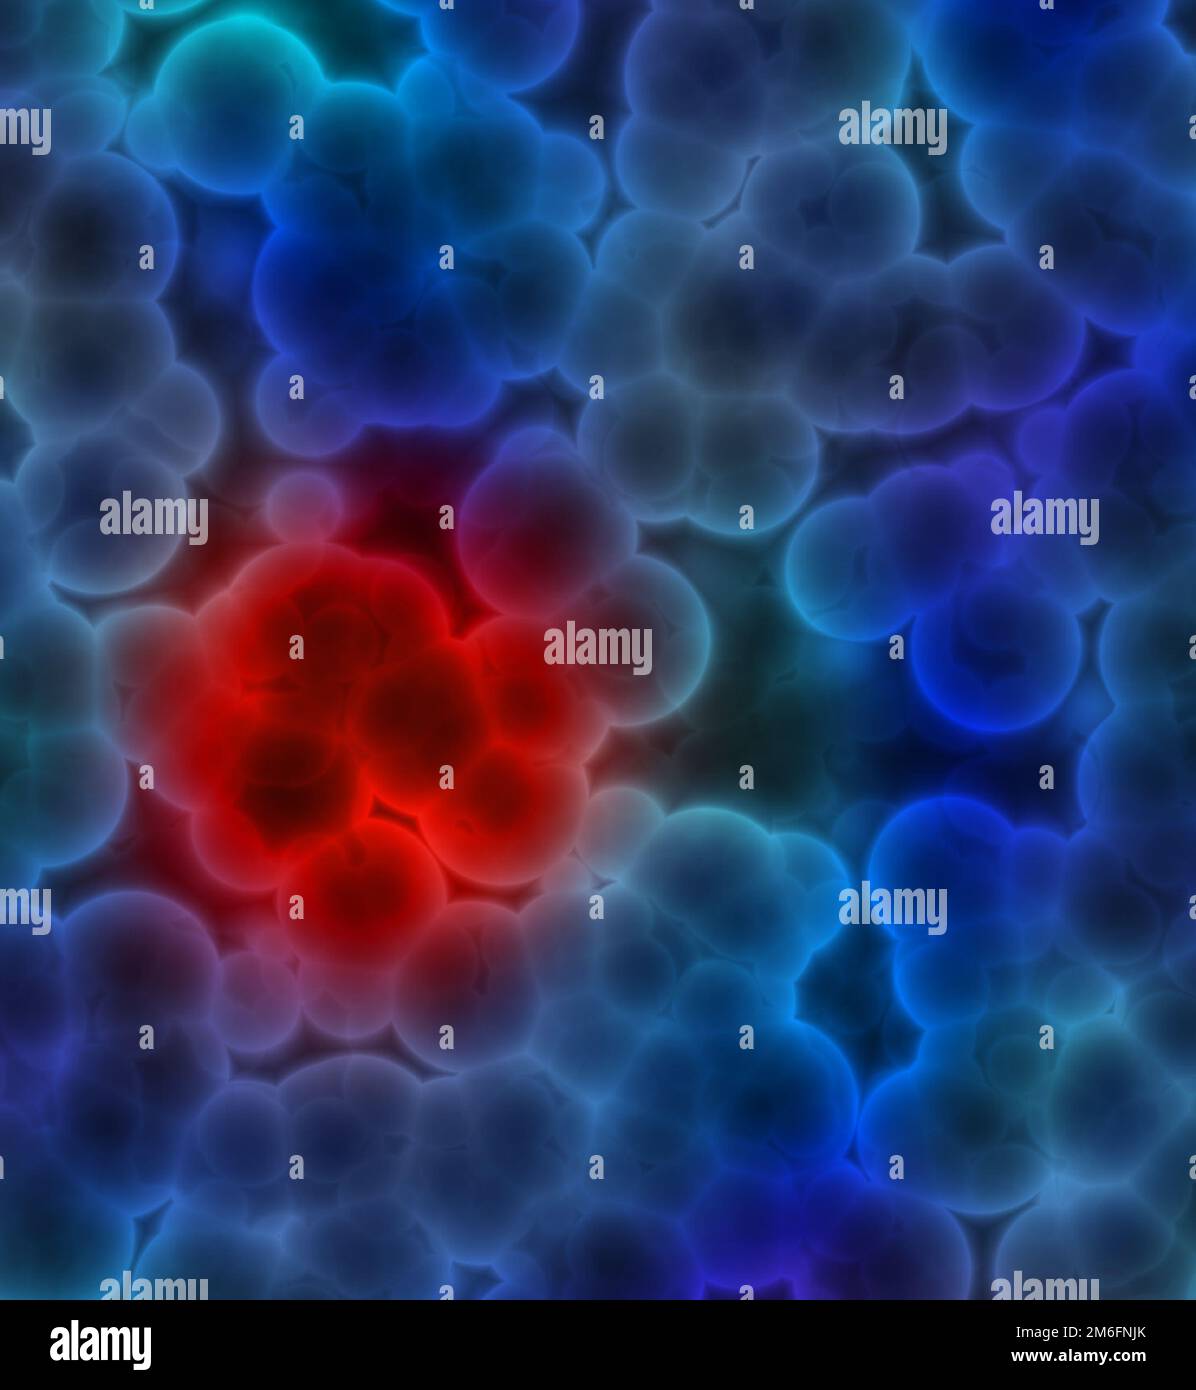 Illustrazione di cellule blu con cluster rosso che indicano un tumore o un'infezione da cancro Foto Stock